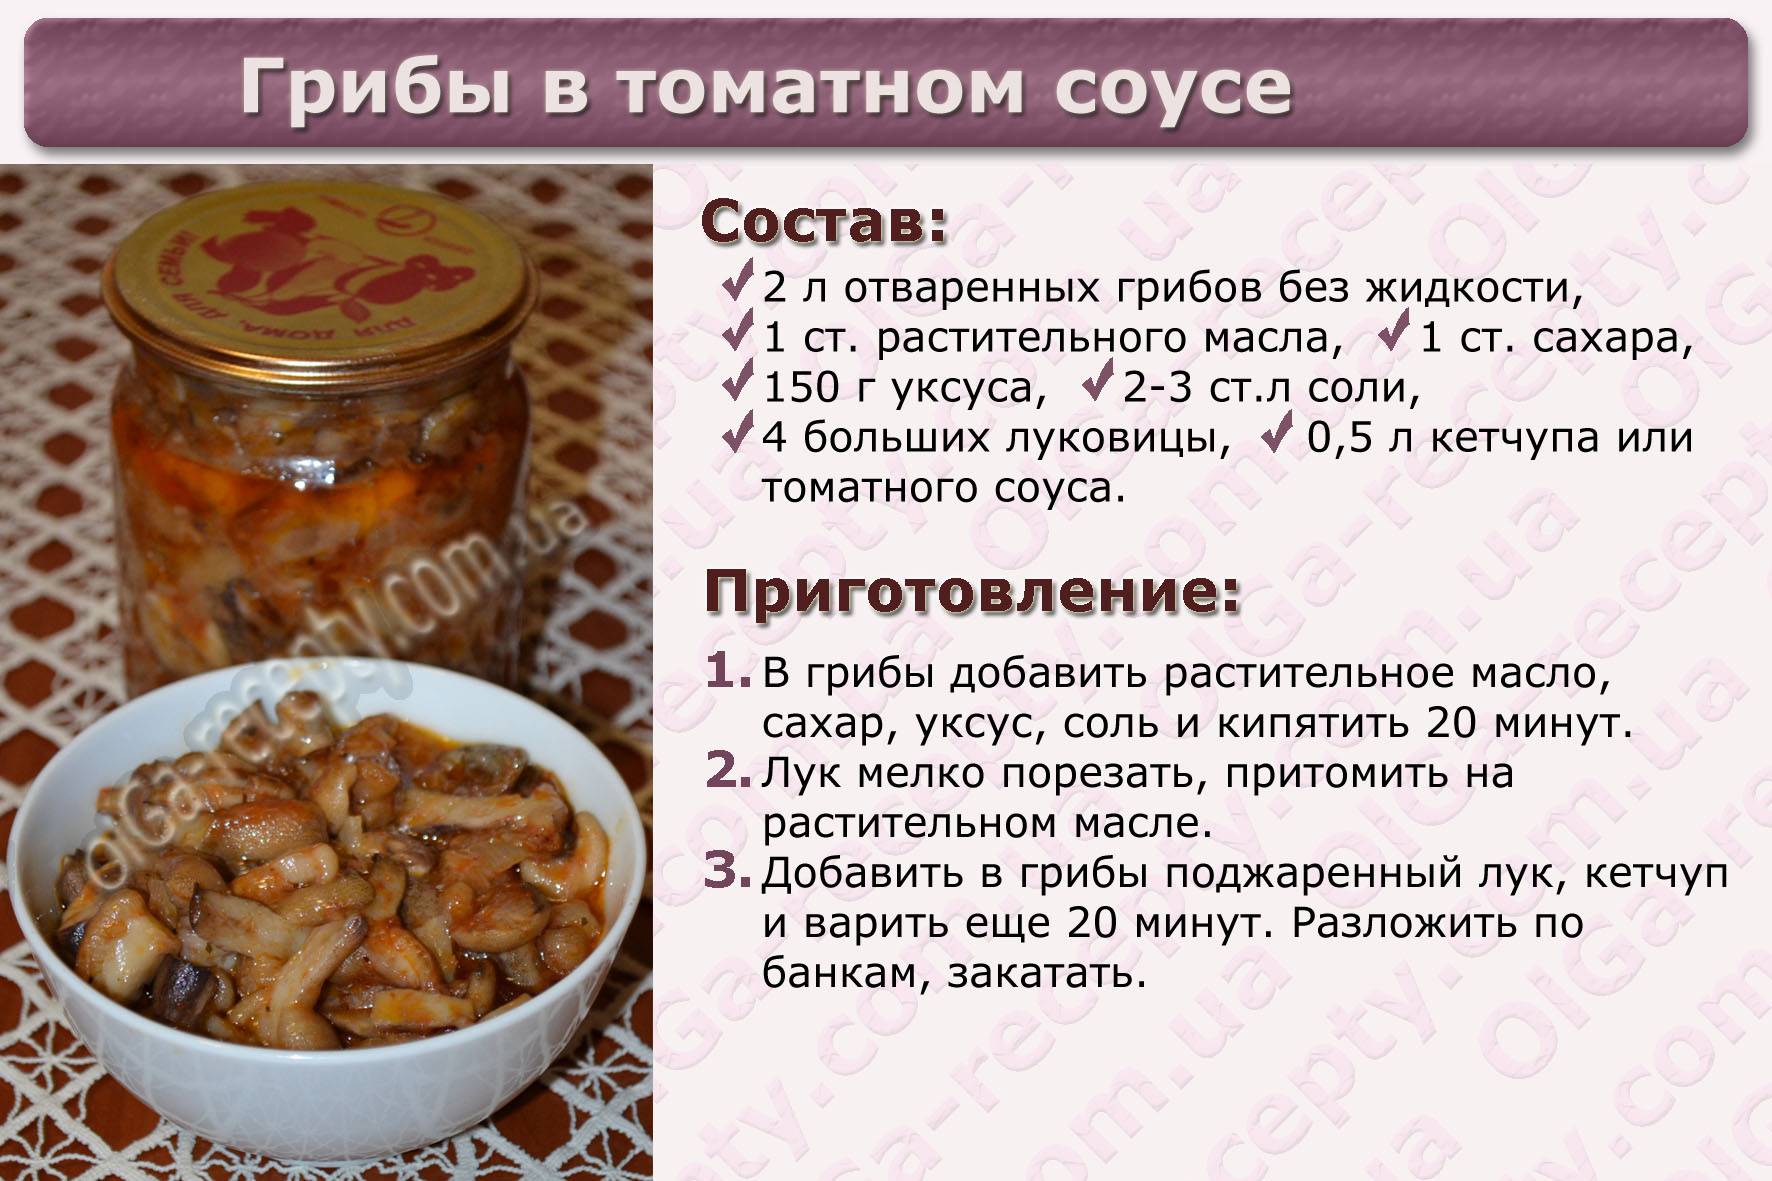 Валуй, кульбик, гриб кулачок, сопливик или бычок (russula foetens): фото, описание, как выглядит и как его готовить